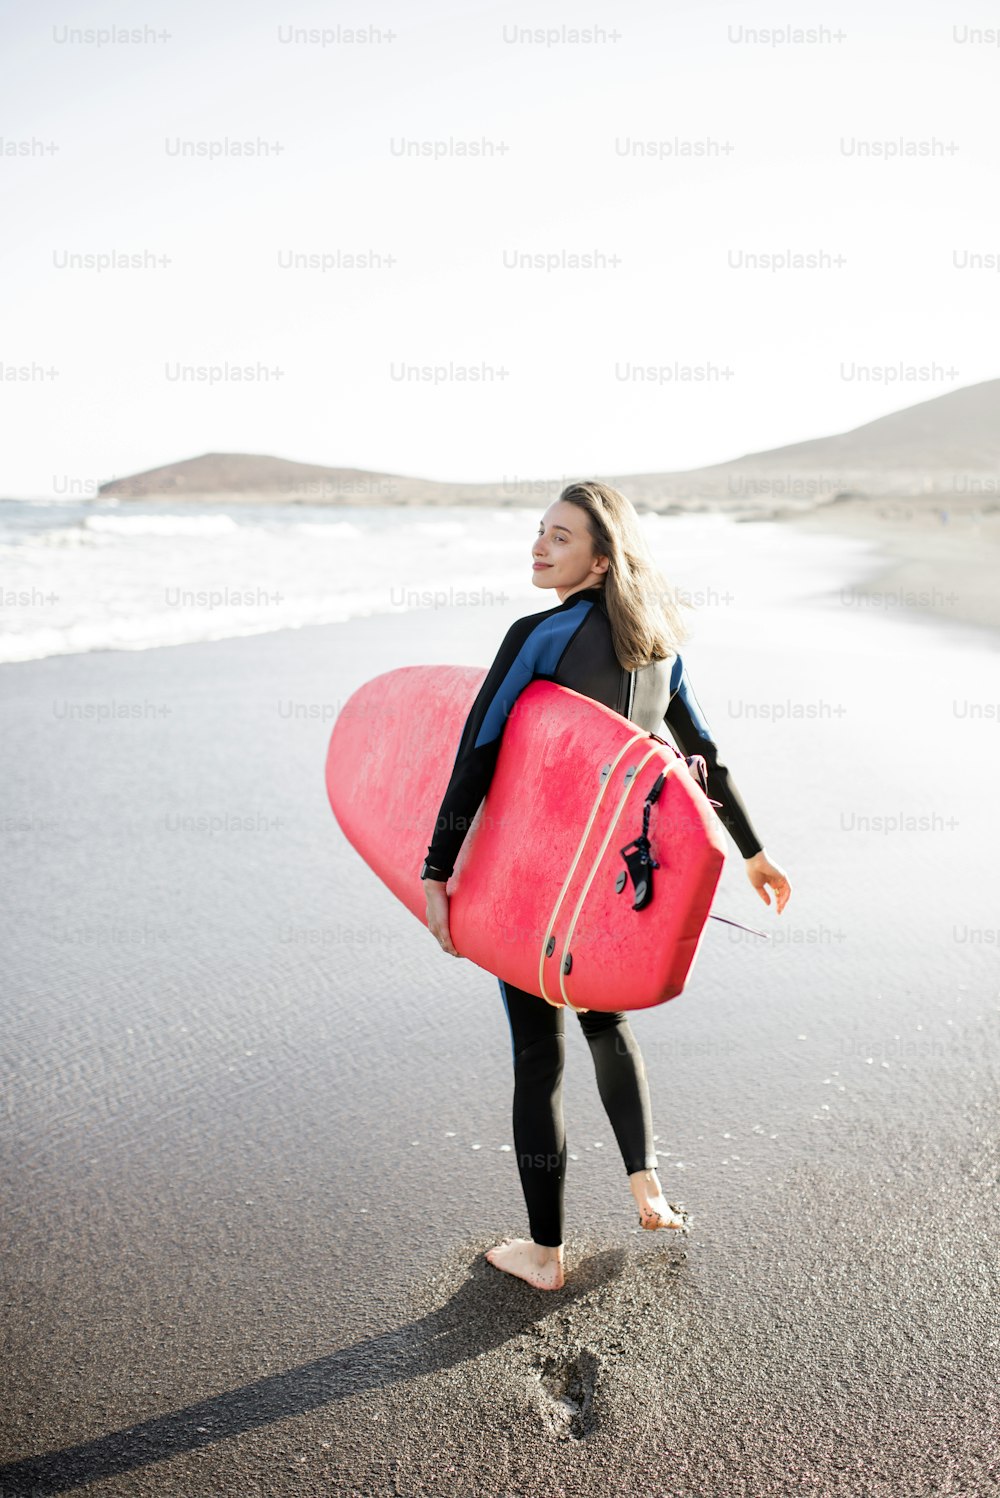 ウェットスーツを着た若い女性がサーフボードを持って歩き、砂の上に足跡を残し、後ろ側から眺めています。ウォータースポーツとアクティブなライフスタイルのコンセプト